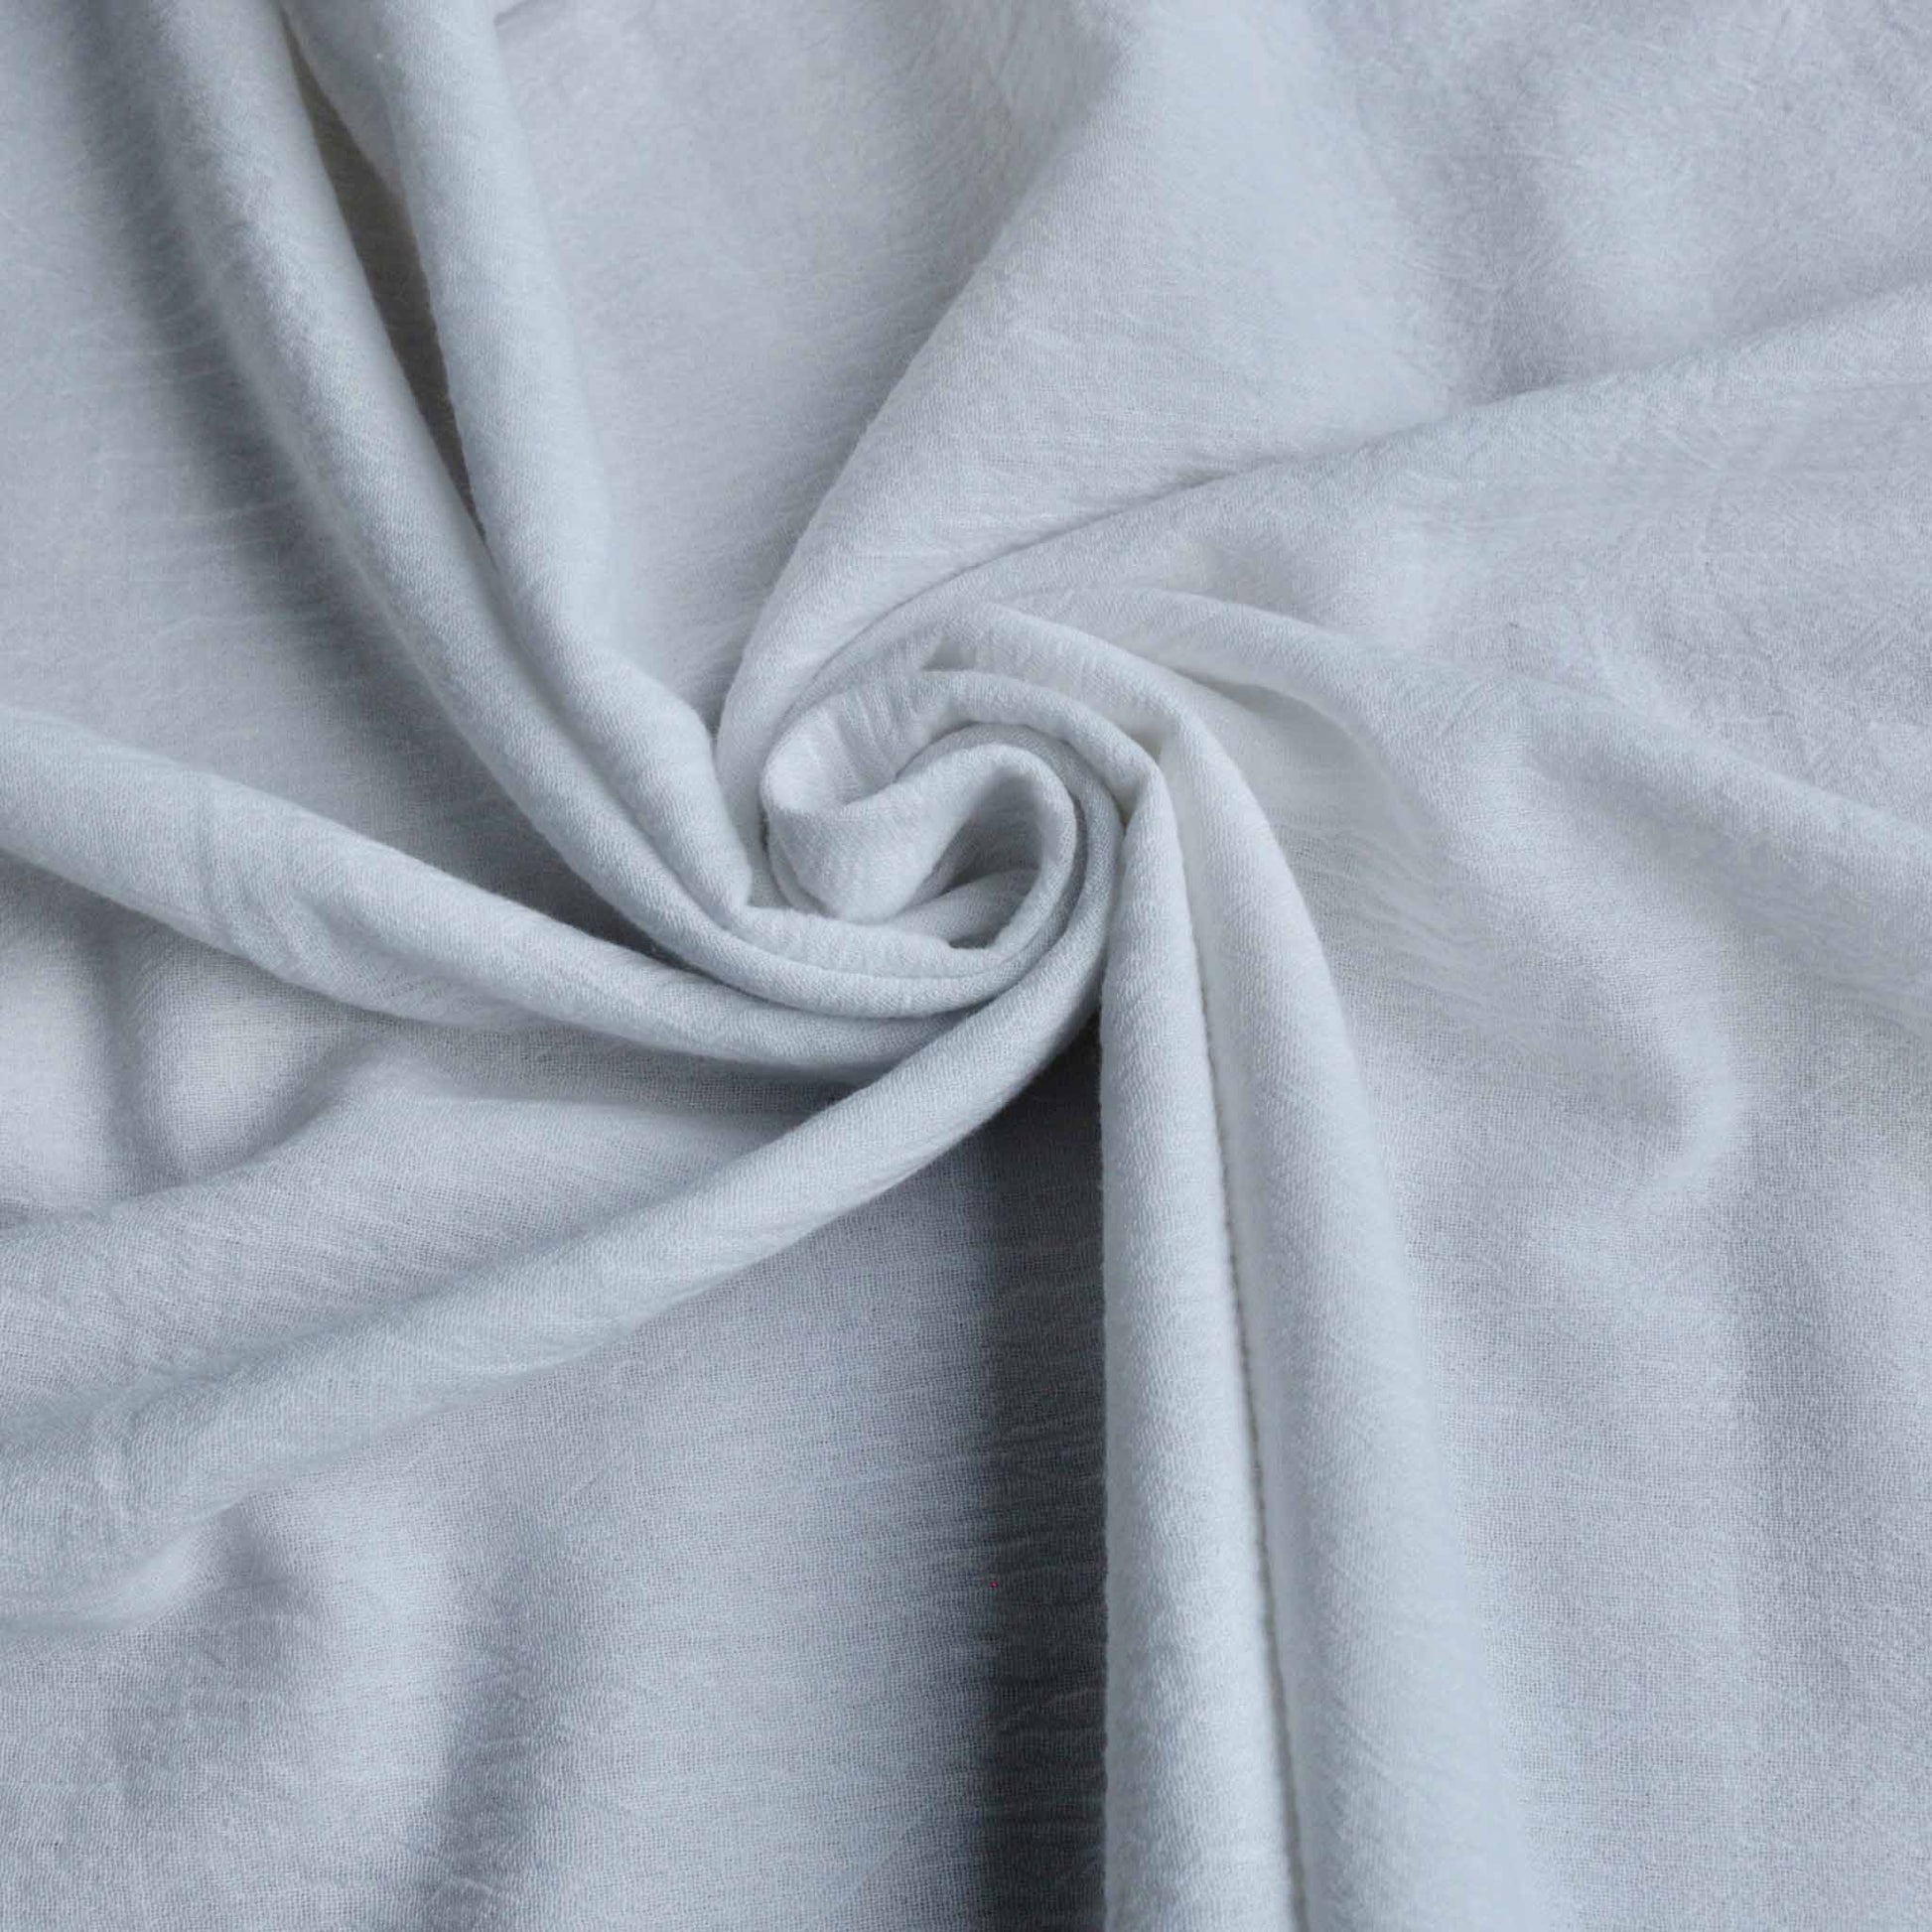 crinkle textured plain white cotton gauze dressmaking fabric